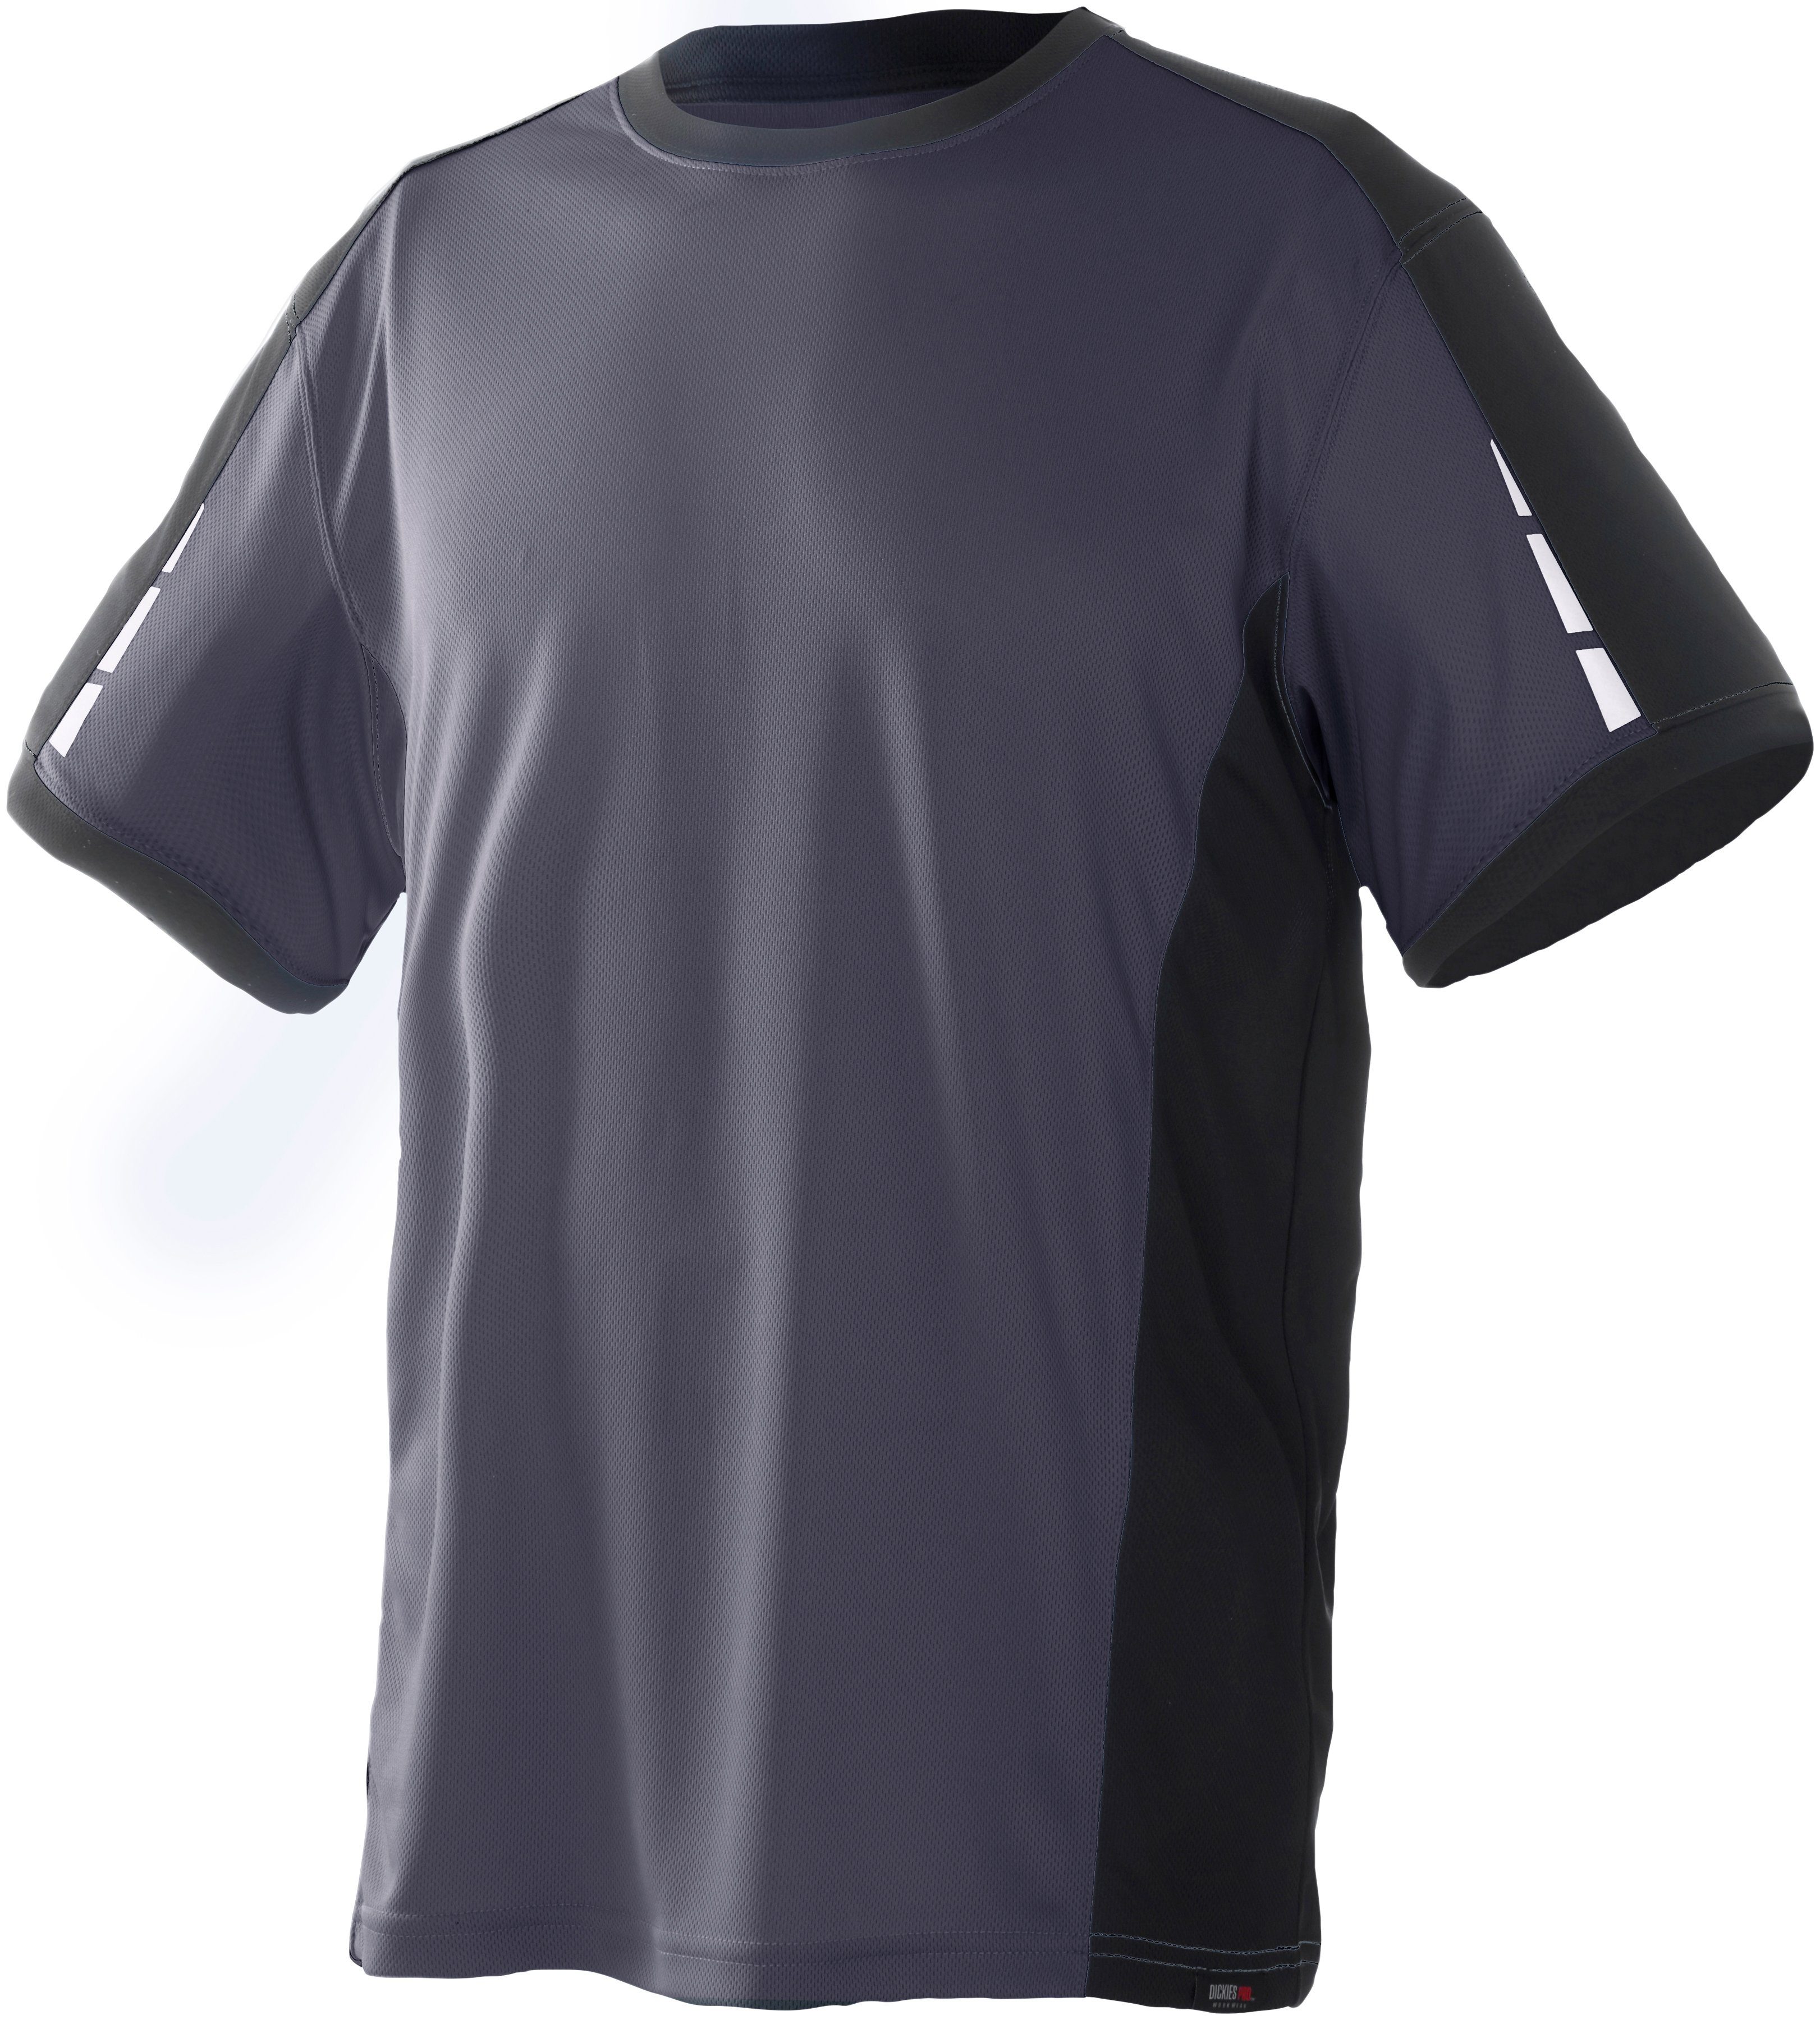 Dickies T-Shirt Pro mit Ärmeln den an grau-schwarz Details reflektierenden